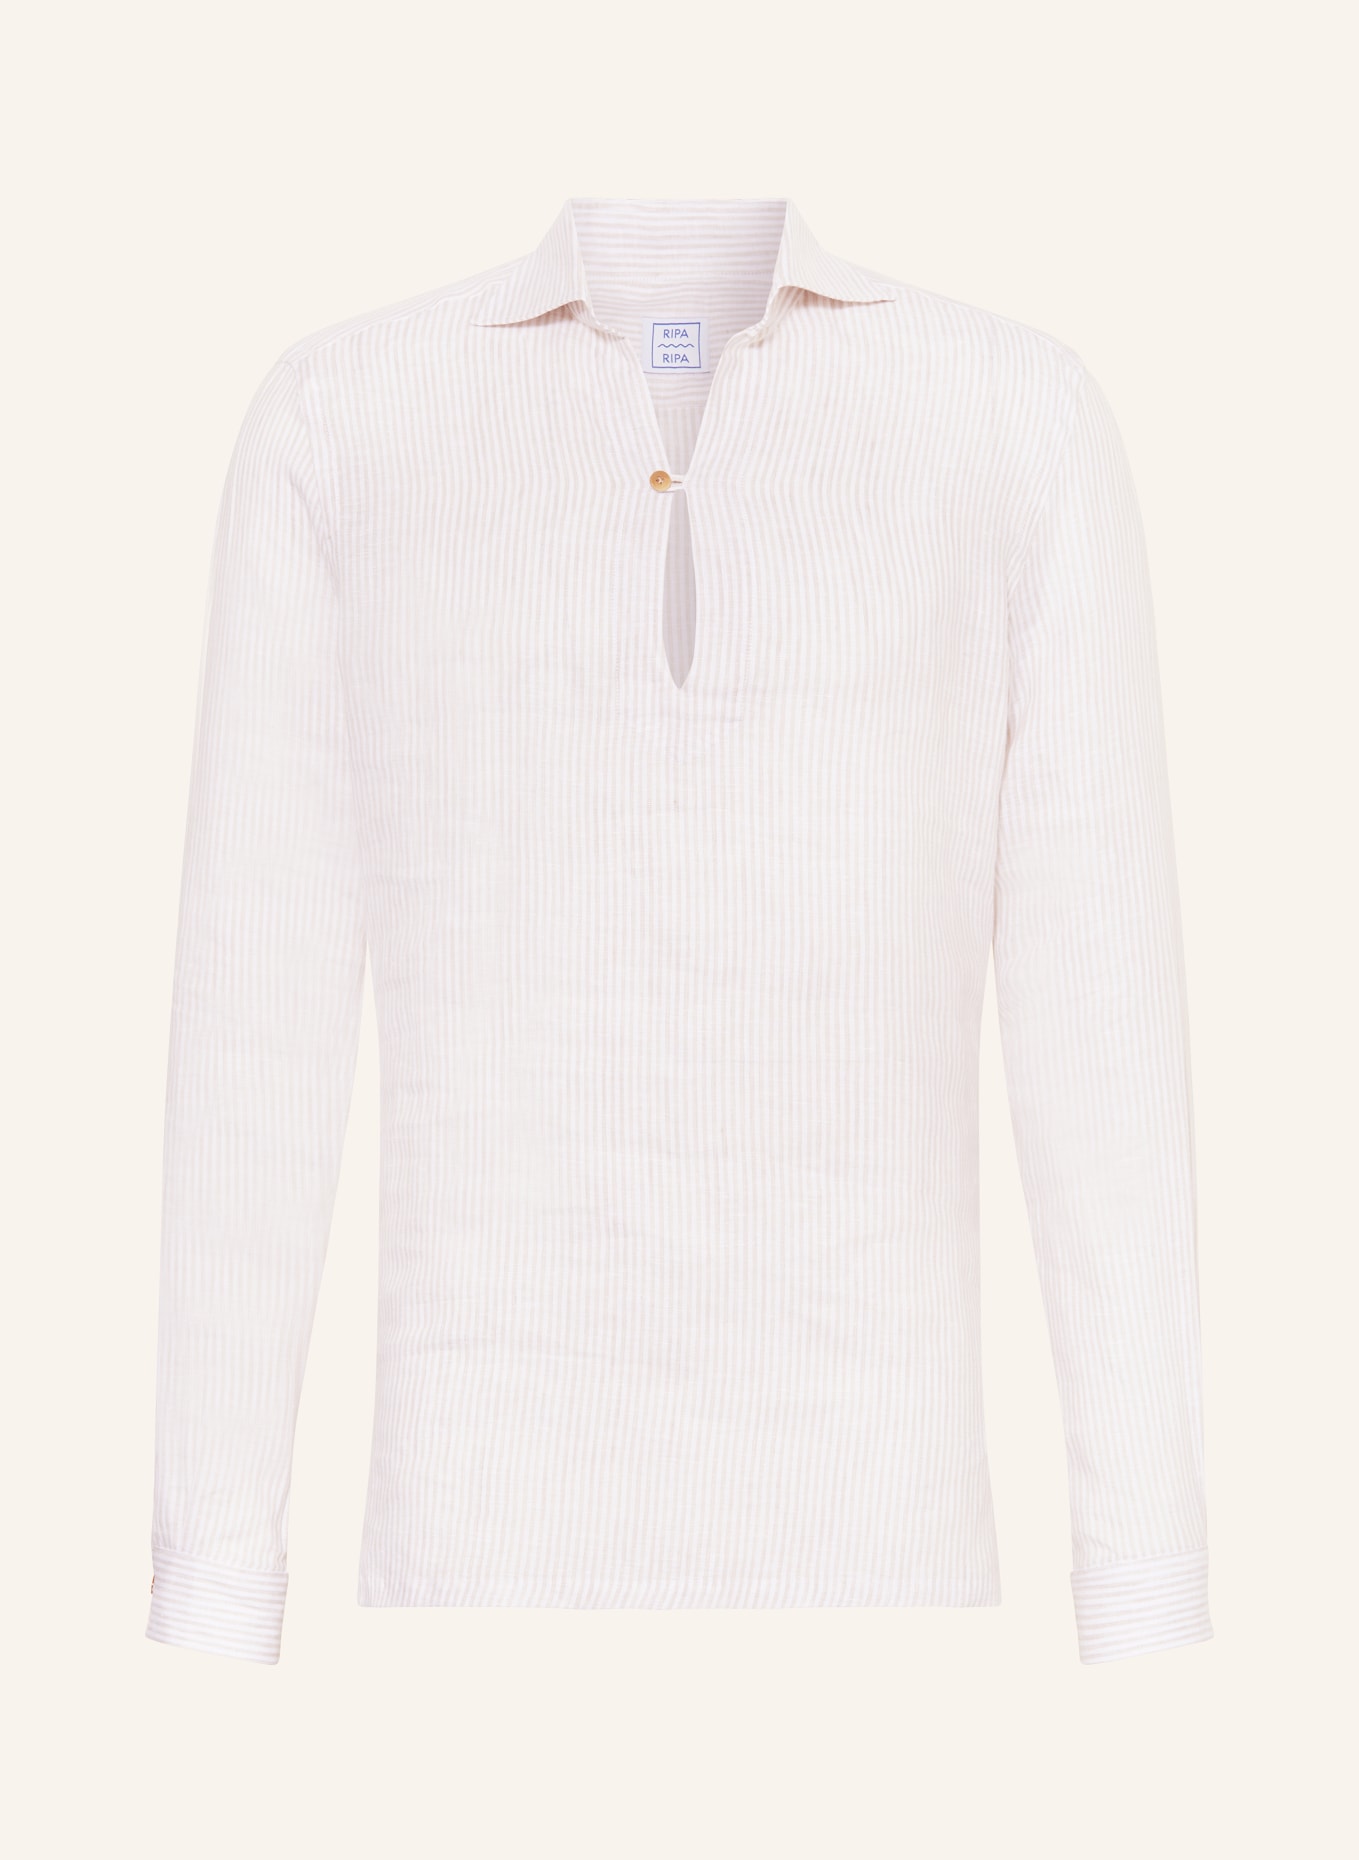 RIPA RIPA Linen shirt CAPRI regular fit, Color: WHITE/ BEIGE (Image 1)